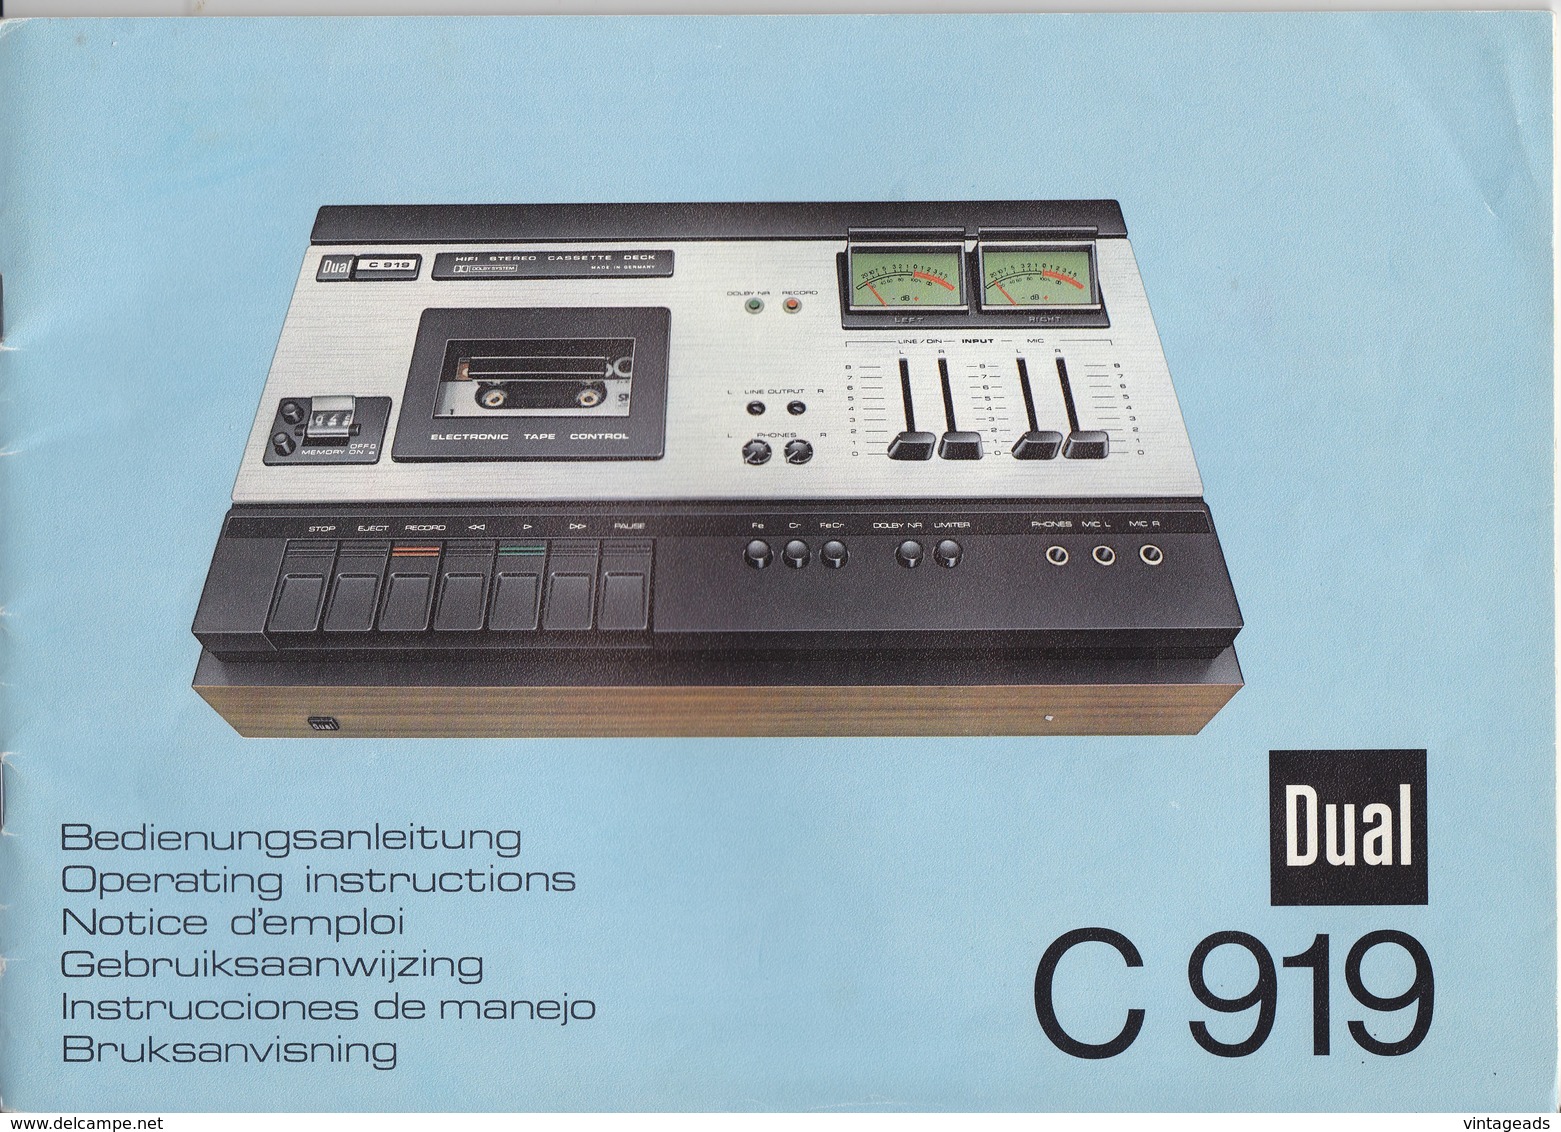 (AD387) Original Werbung Und Bedienungsanleitung DUAL C919 Kassettendeck, 1976 - Herstelhandleidingen